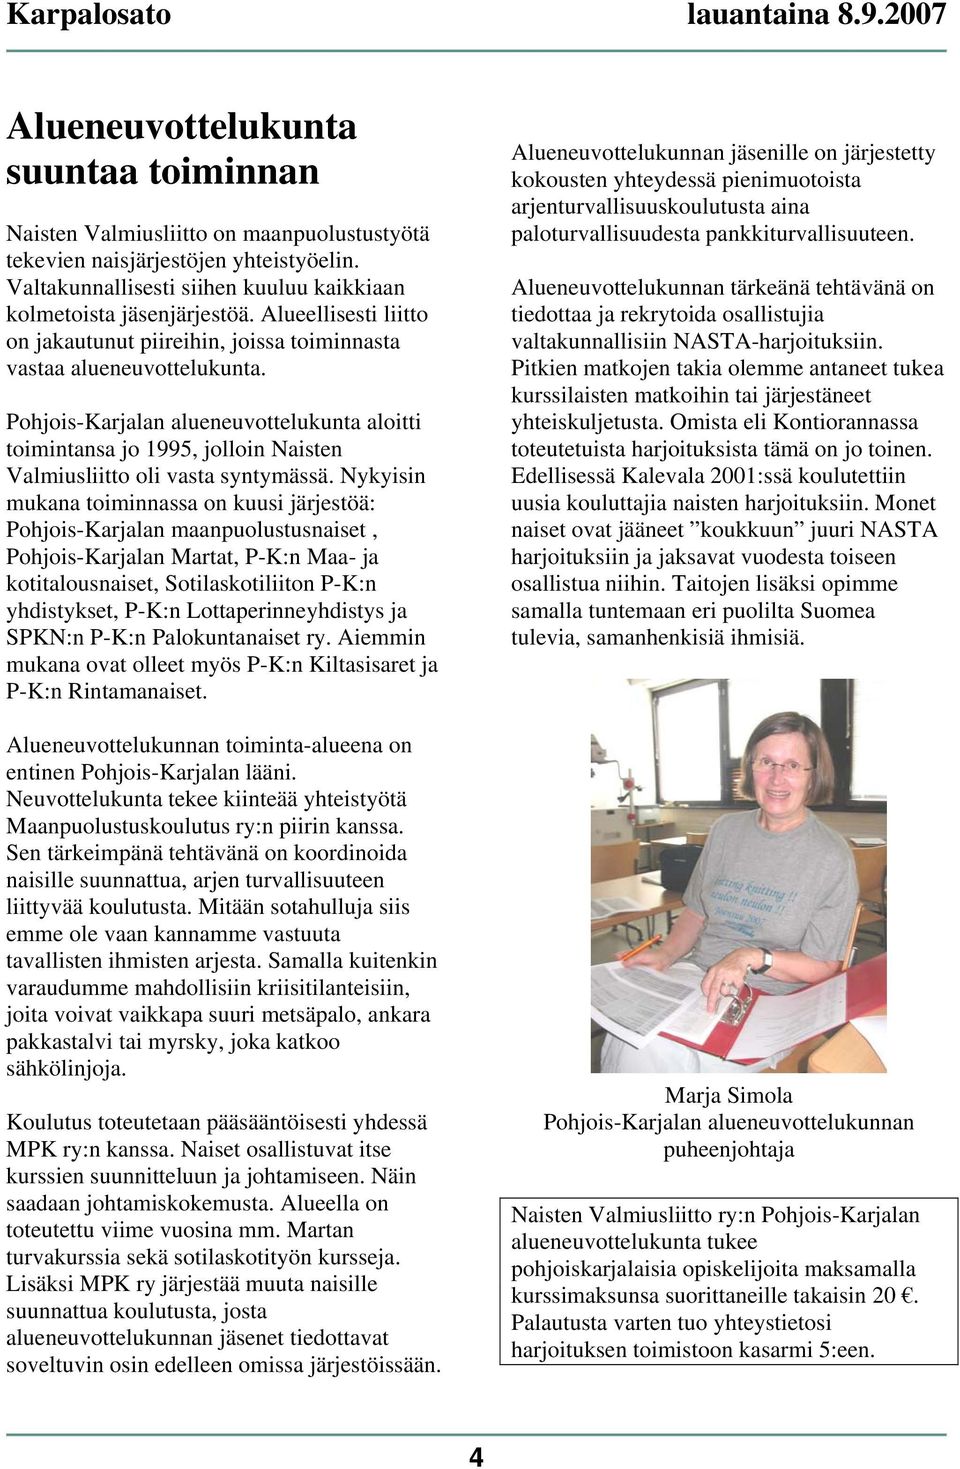 Pohjois-Karjalan alueneuvottelukunta aloitti toimintansa jo 1995, jolloin Naisten Valmiusliitto oli vasta syntymässä.